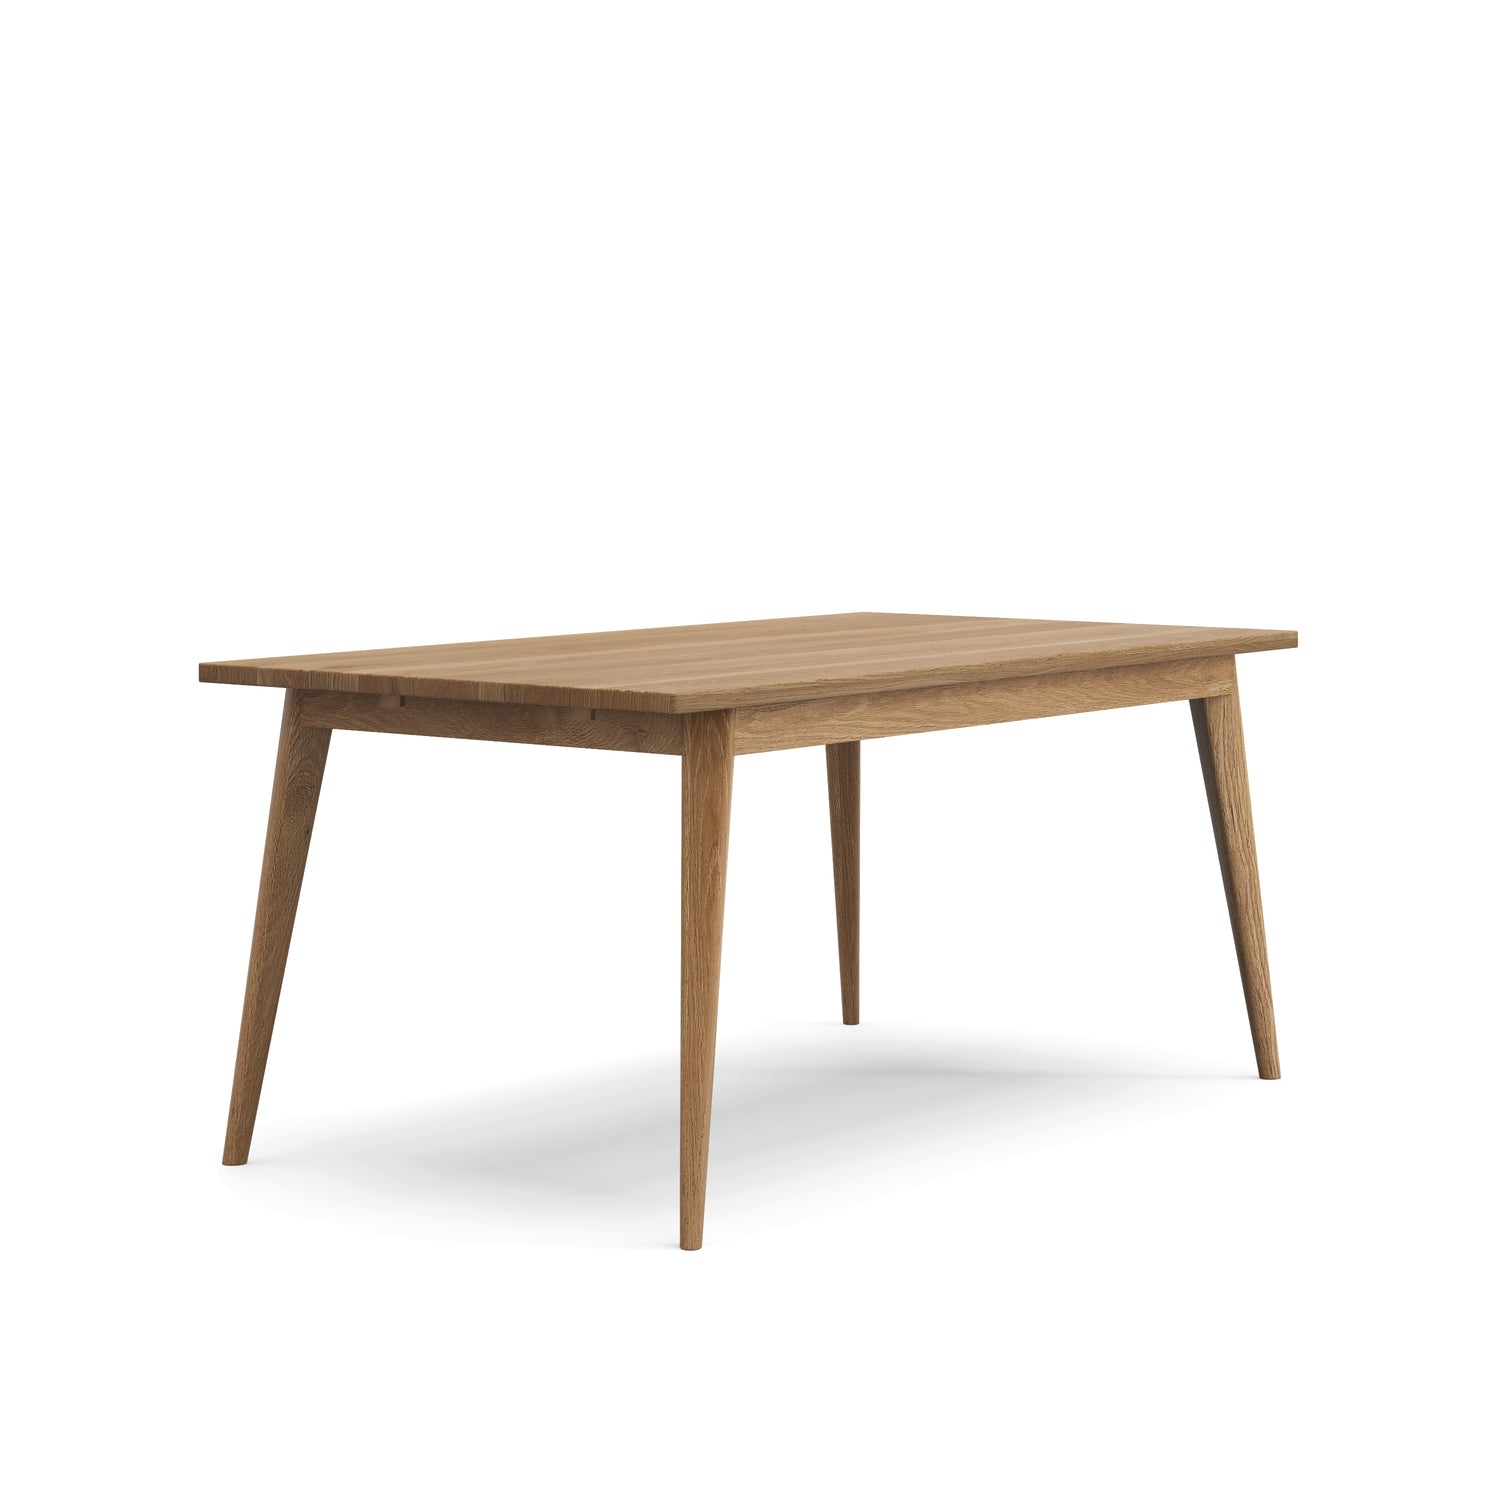 Oslo oak table - 66 x 36 in. - 3035